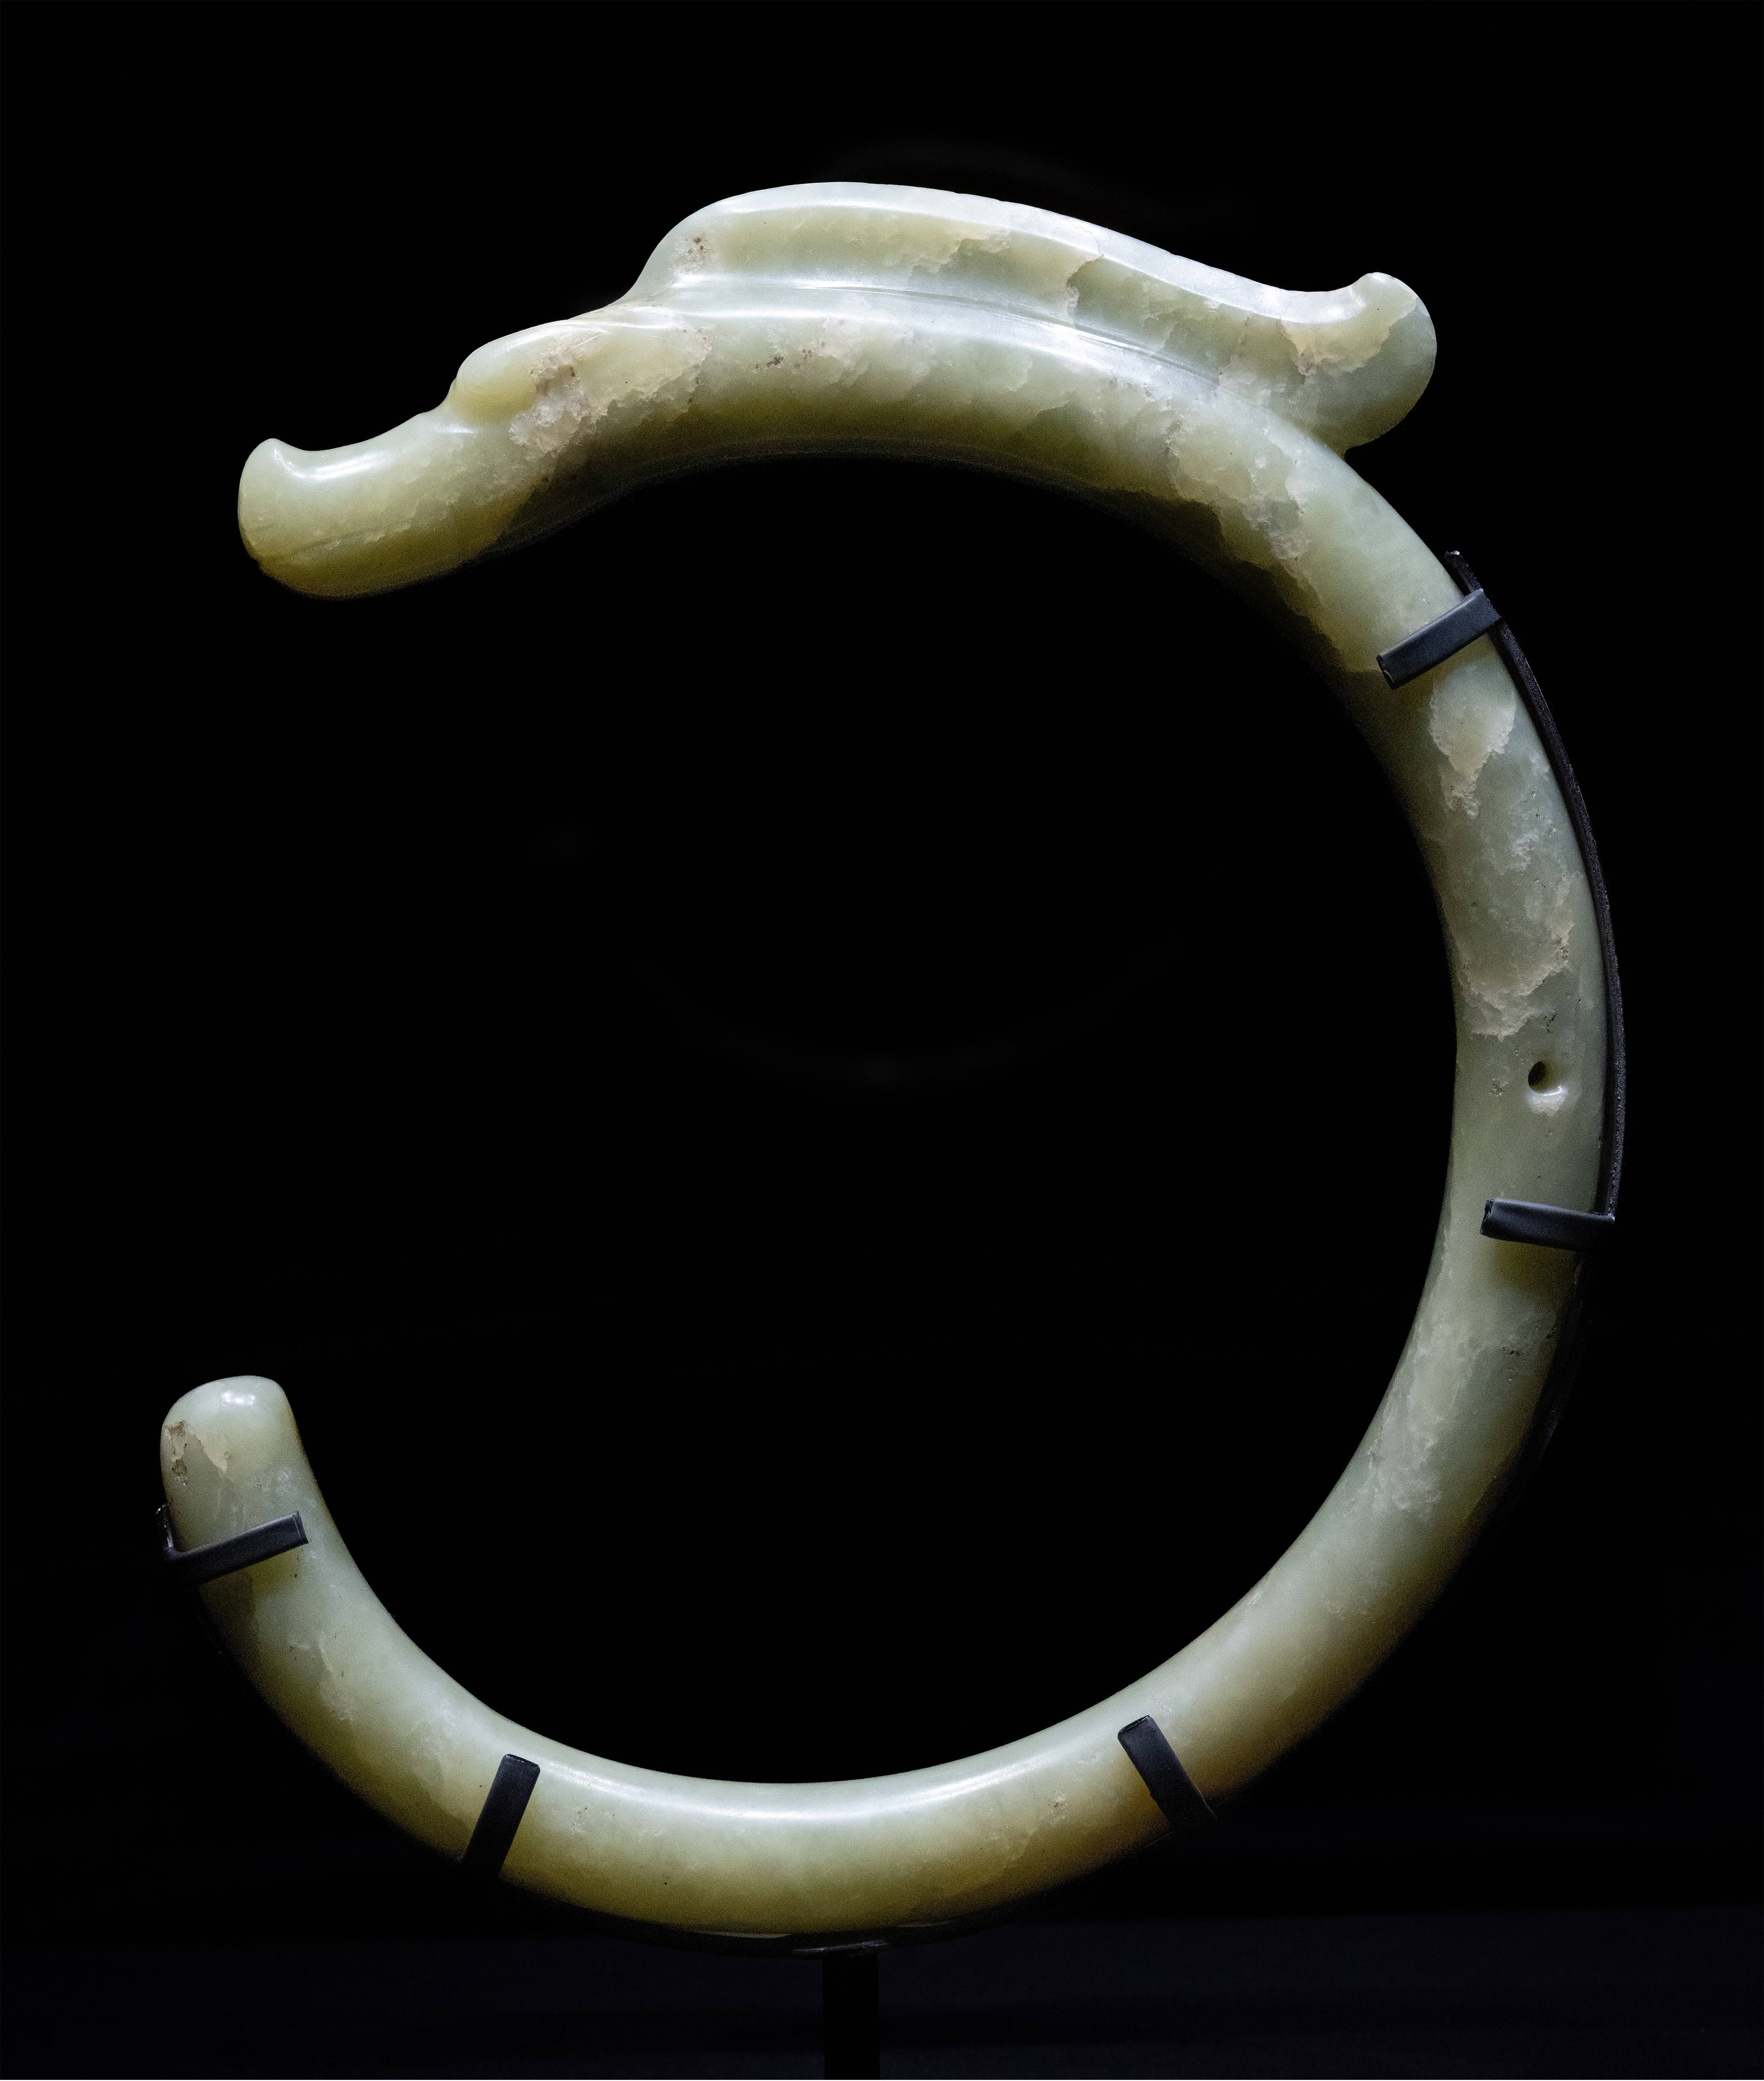 新石器时代 碧玉 c 形龙 中国国家博物馆藏要了解龙在玉器中的最早